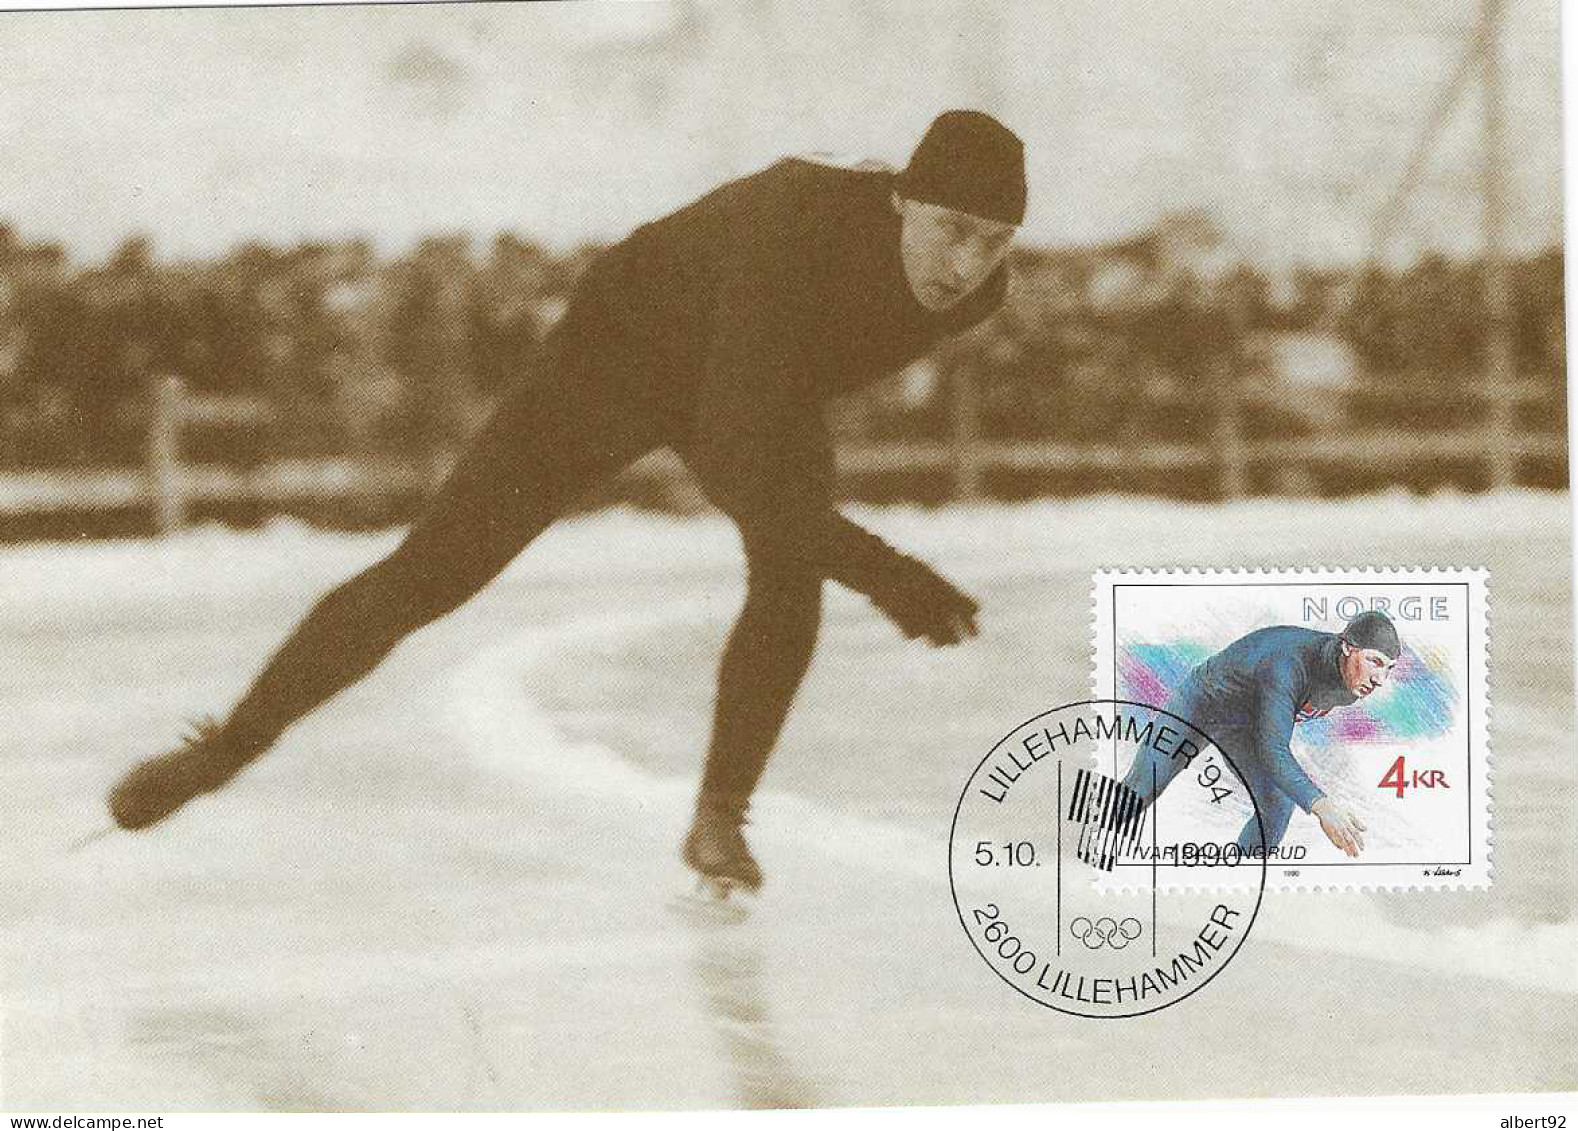 1990 Hommage à Ivar Ballangrud Patinage De Vitesse: Médaillé Or Aux Jeux Olympiques De Saint Moritz 1928 (5000m) - Winter 1928: St-Moritz